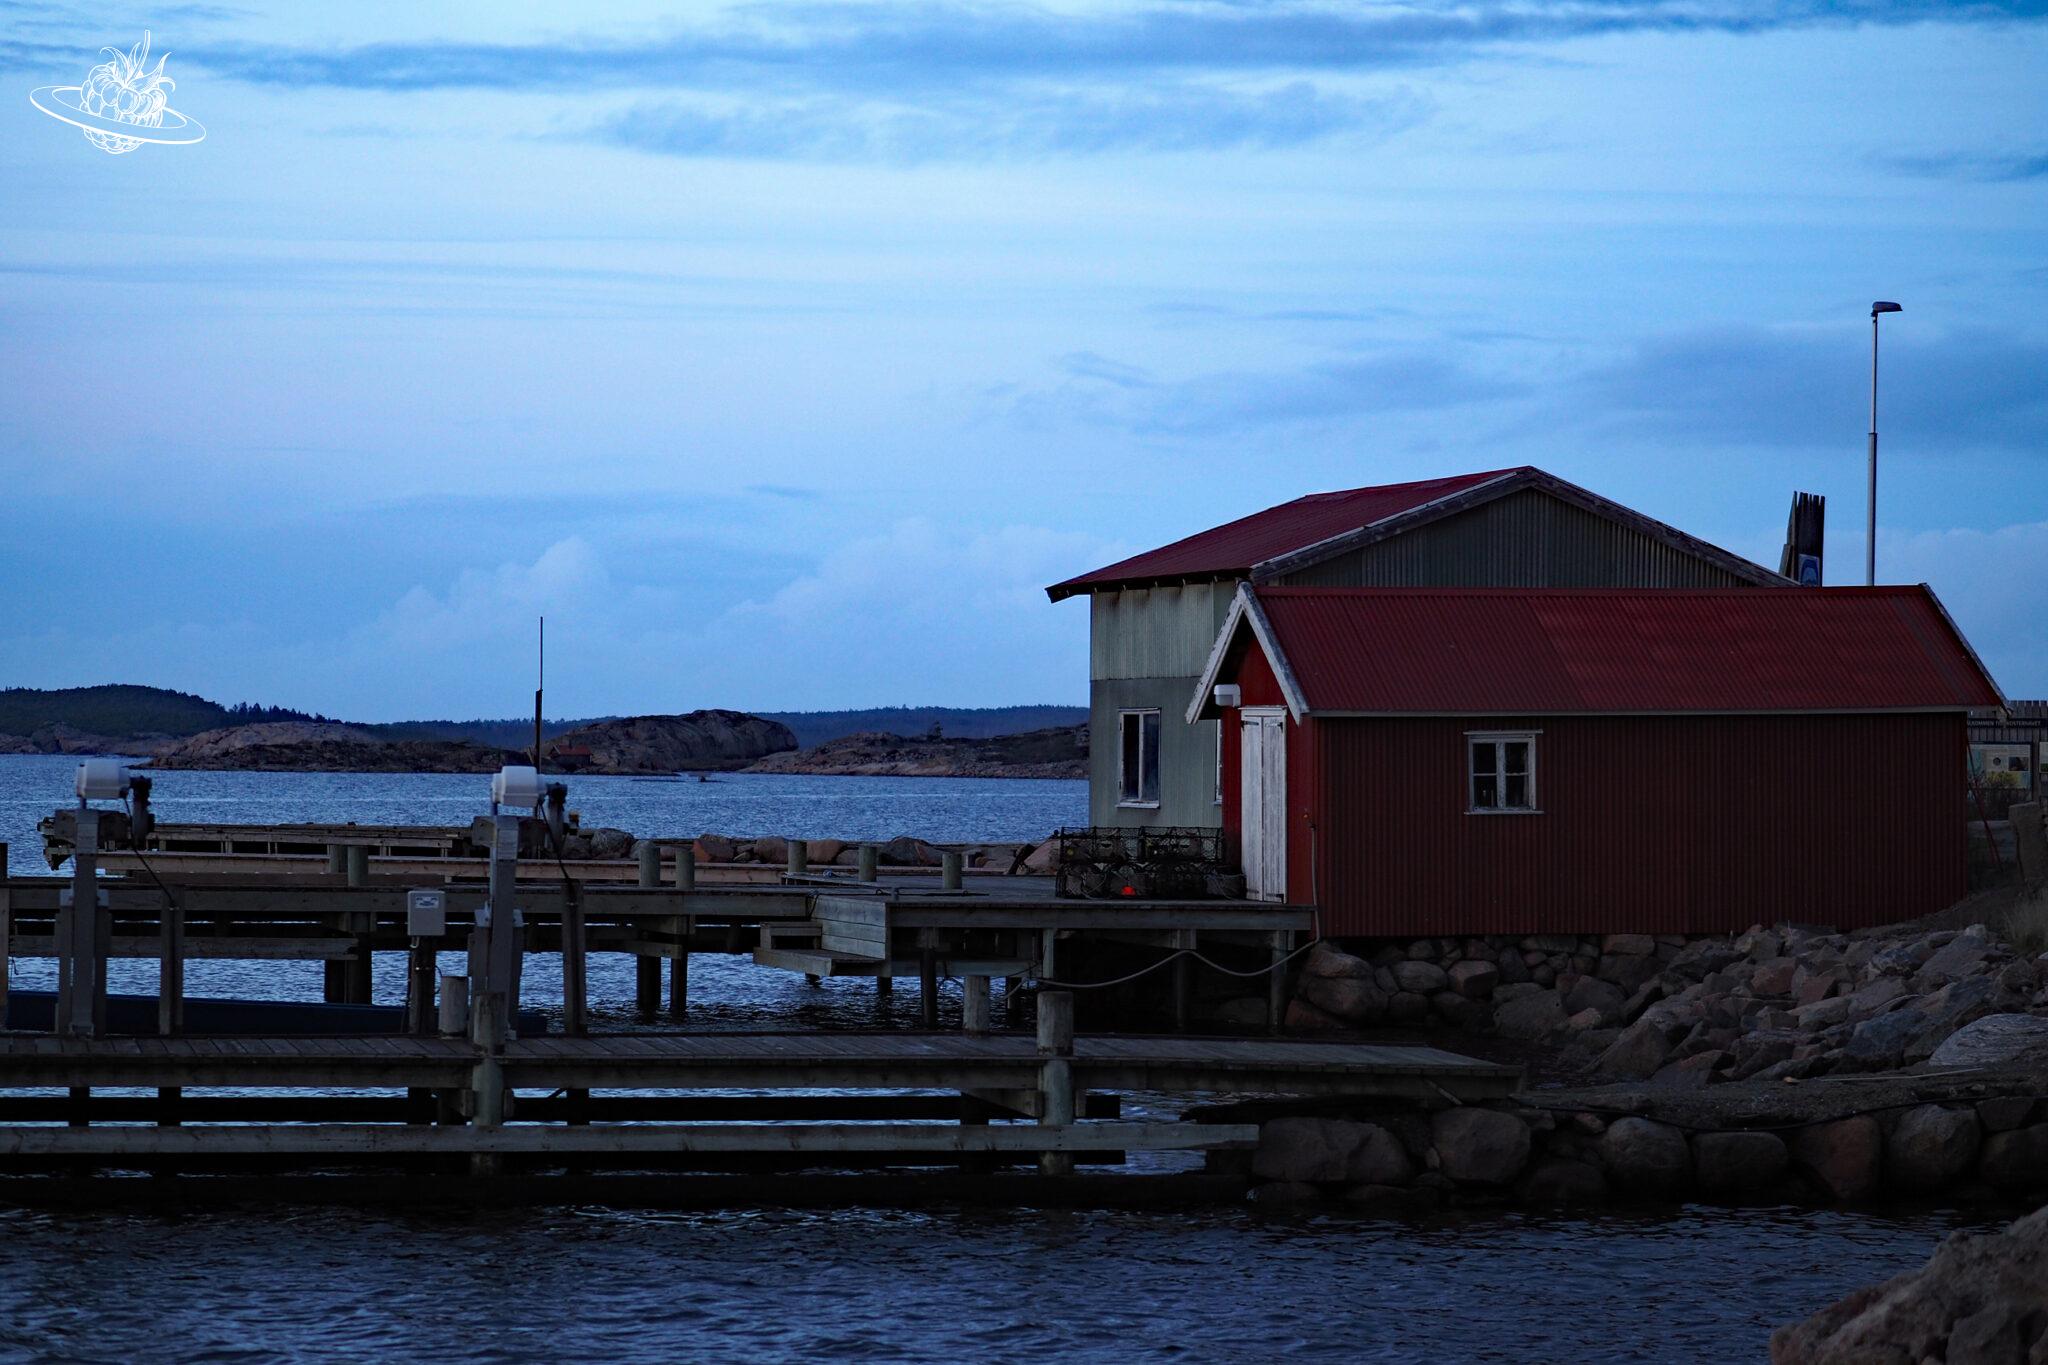 Reise-Tipp Südschweden im November: Eine Geschichte von Krimi-Bücher-Locations, Zimtschnecken und schönen Wellness-Hotels